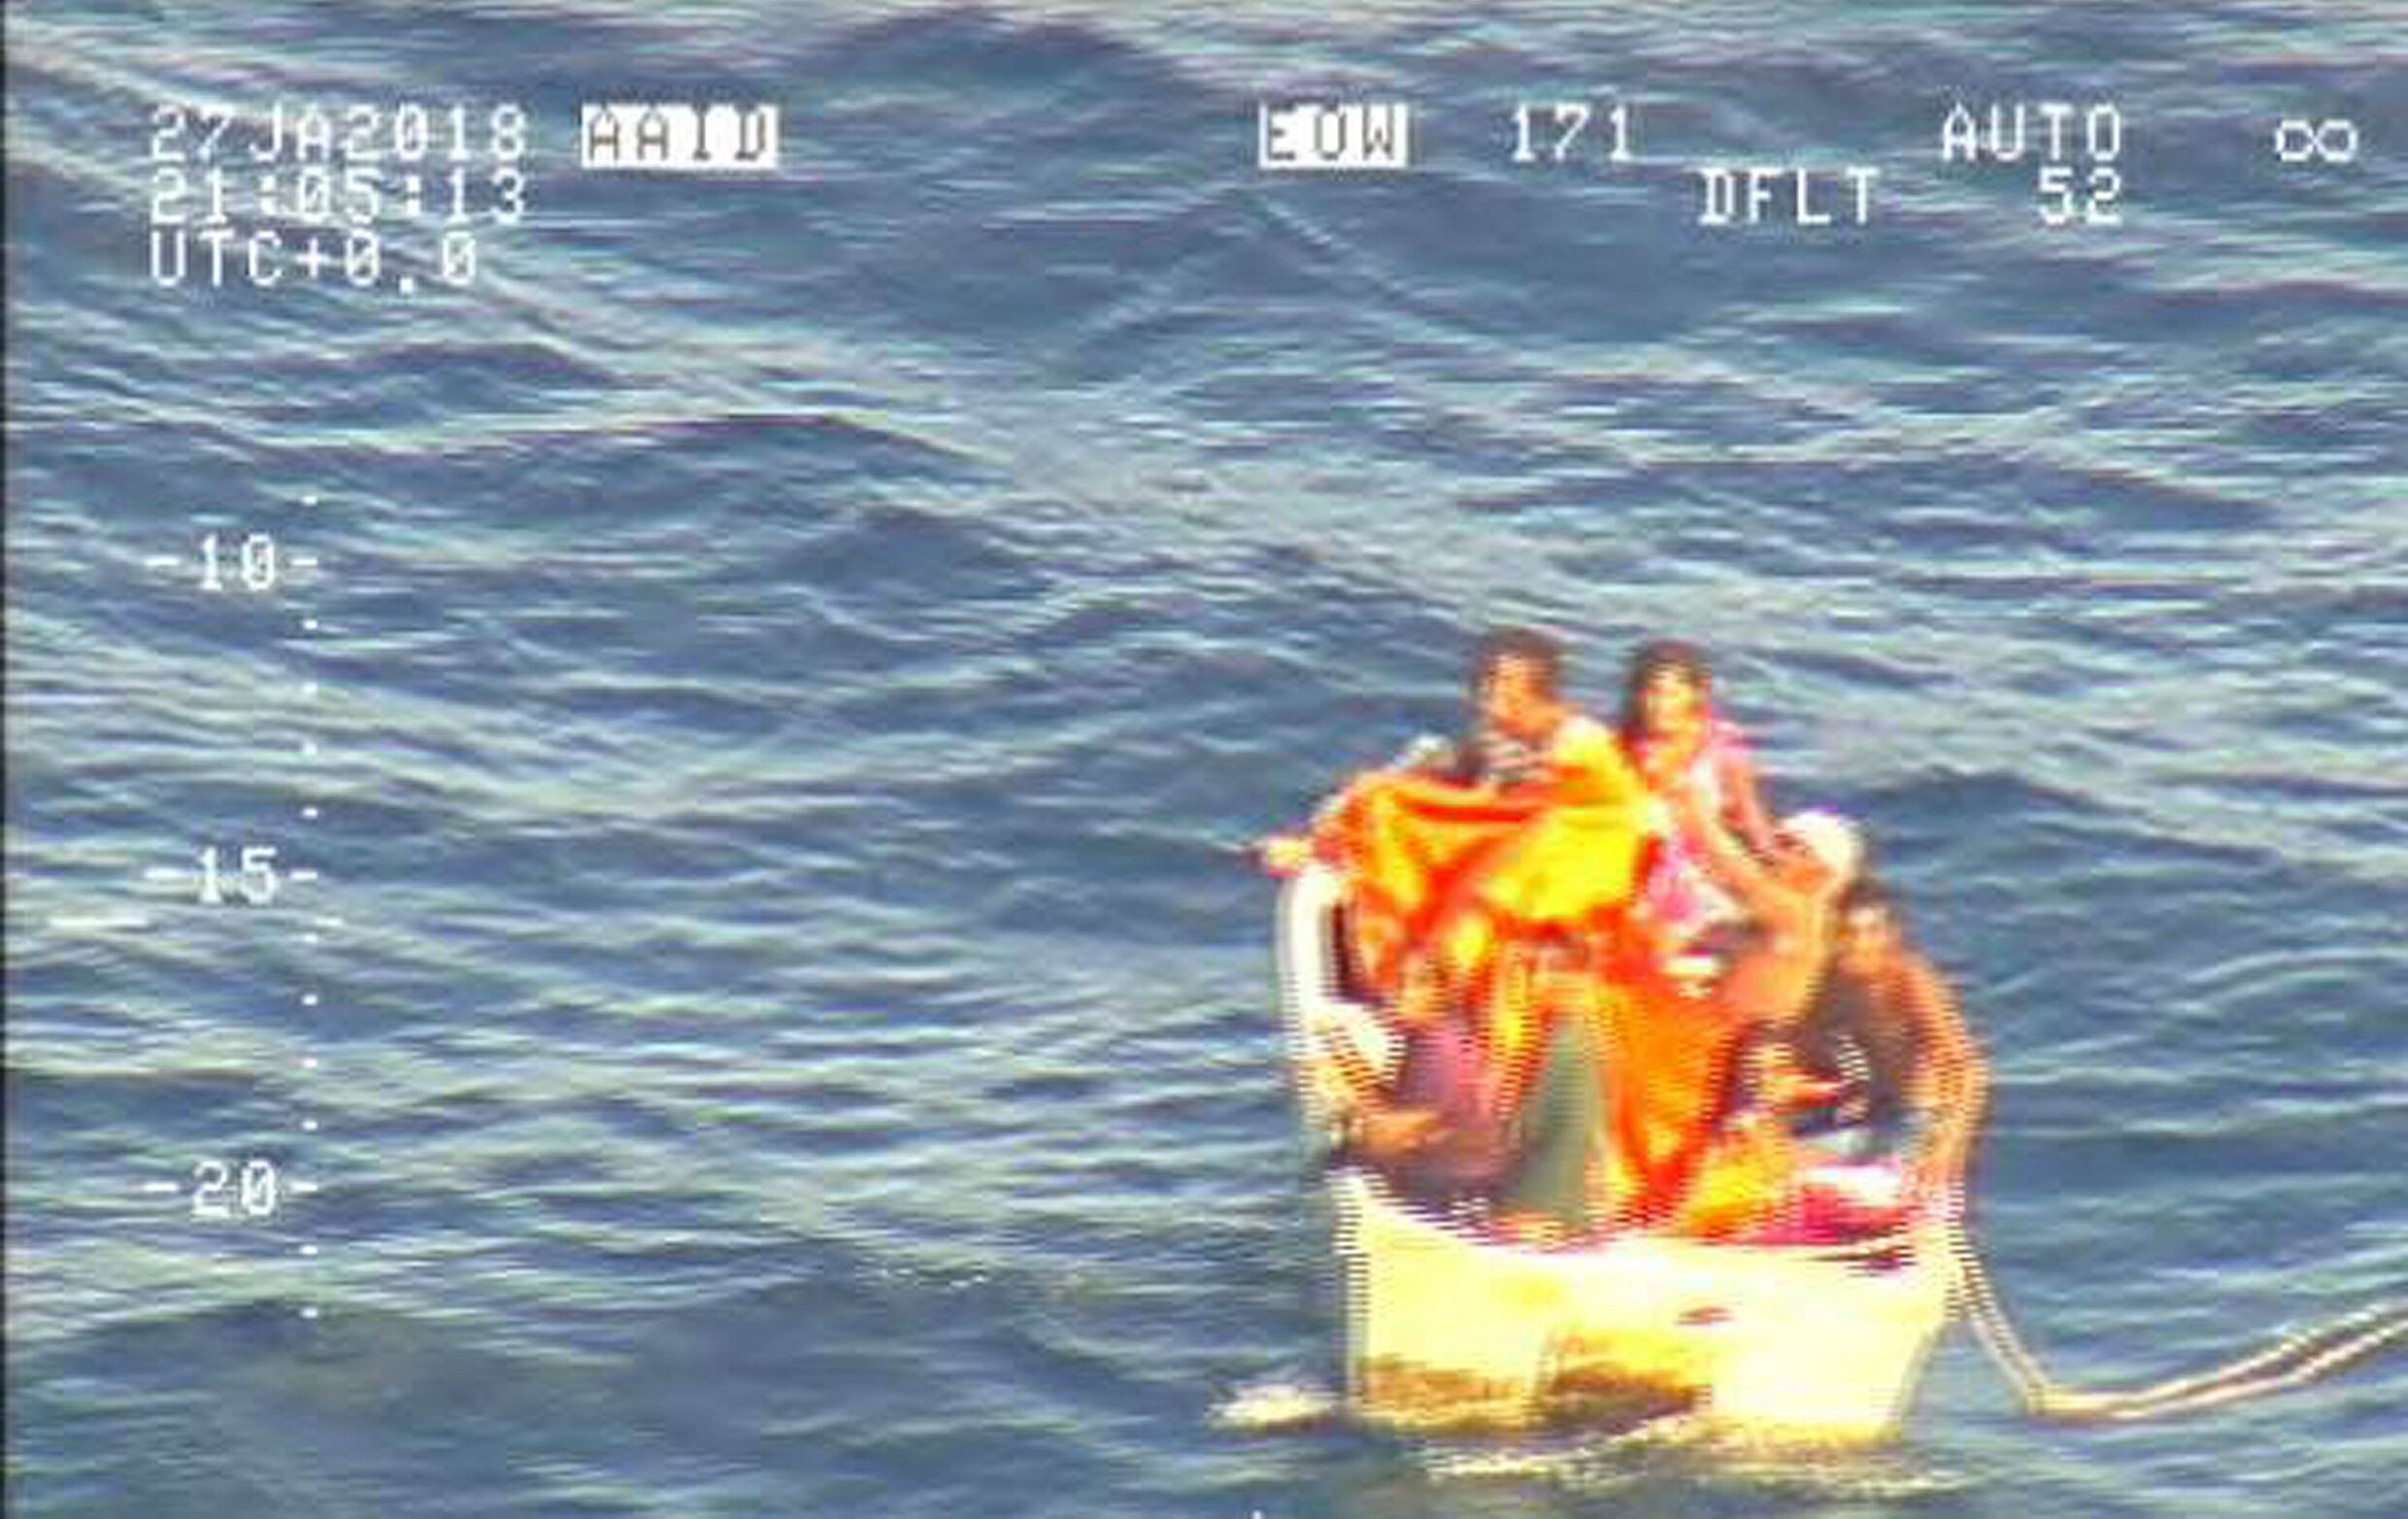 Zeven schipbreukelingen, waaronder een baby, gered nabij eilandengroep Kiribati